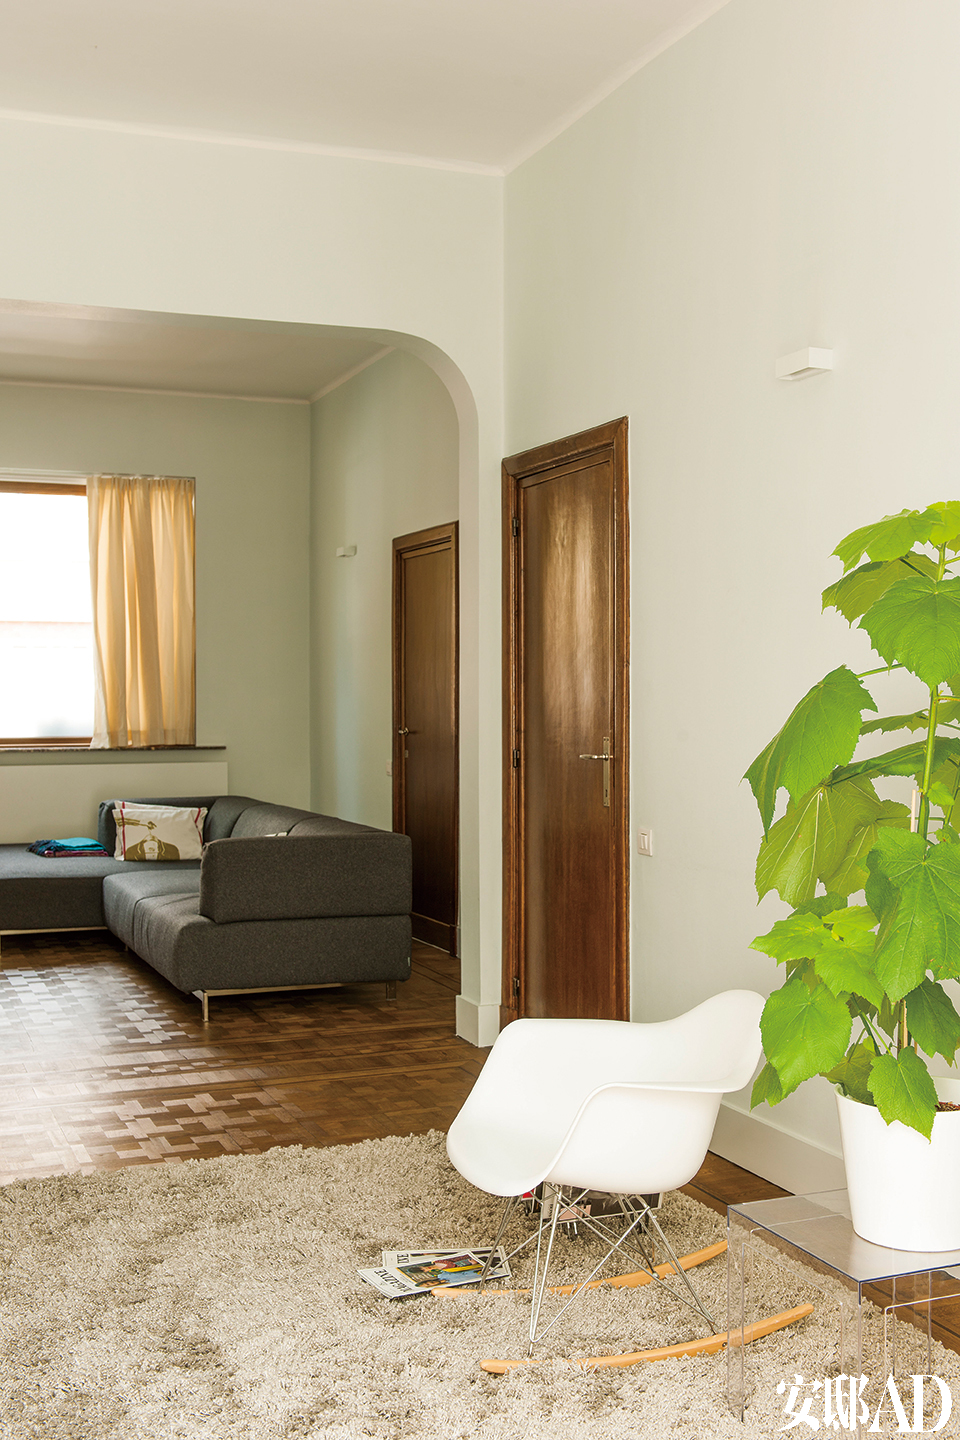 原有的玻璃门一直通向起居室。灰褐色地毯来自宜家家居，Eames白色摇椅和绿植增添了一份清新。